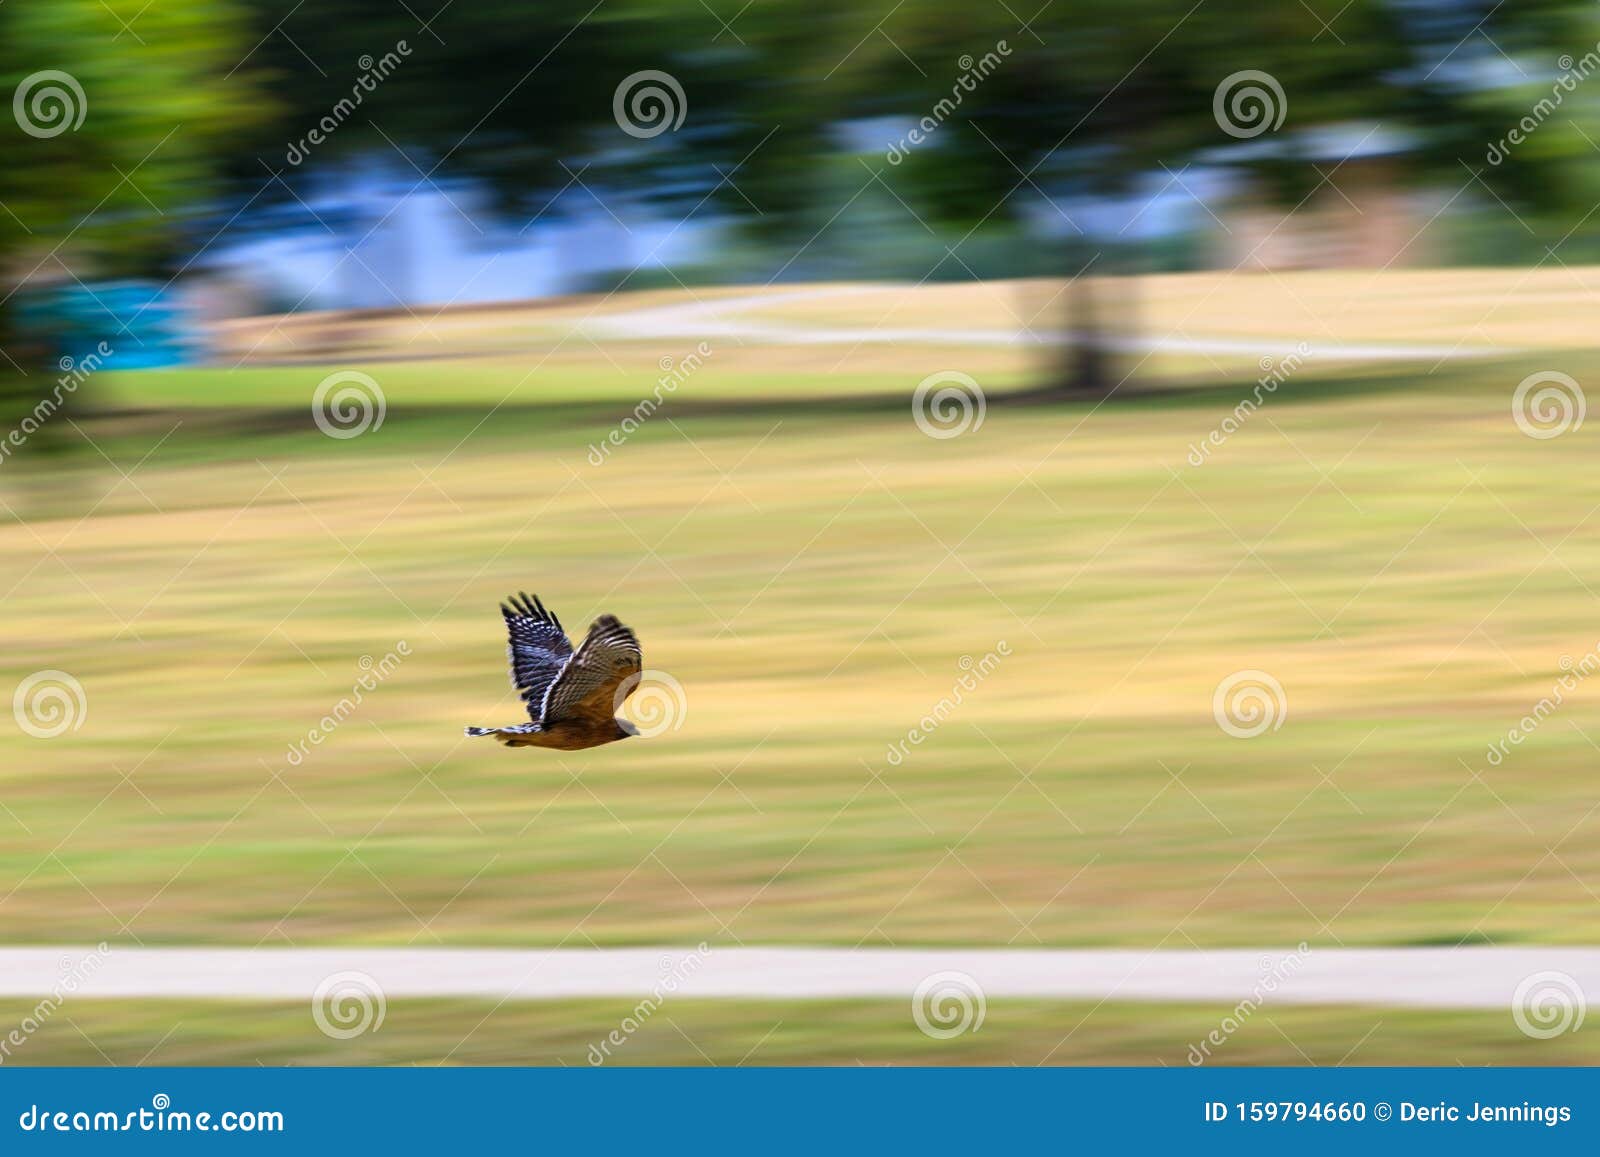 Faucon Solitaire En Vol Dans Le Parc Photo stock - Image du noir, oiseau:  159794660